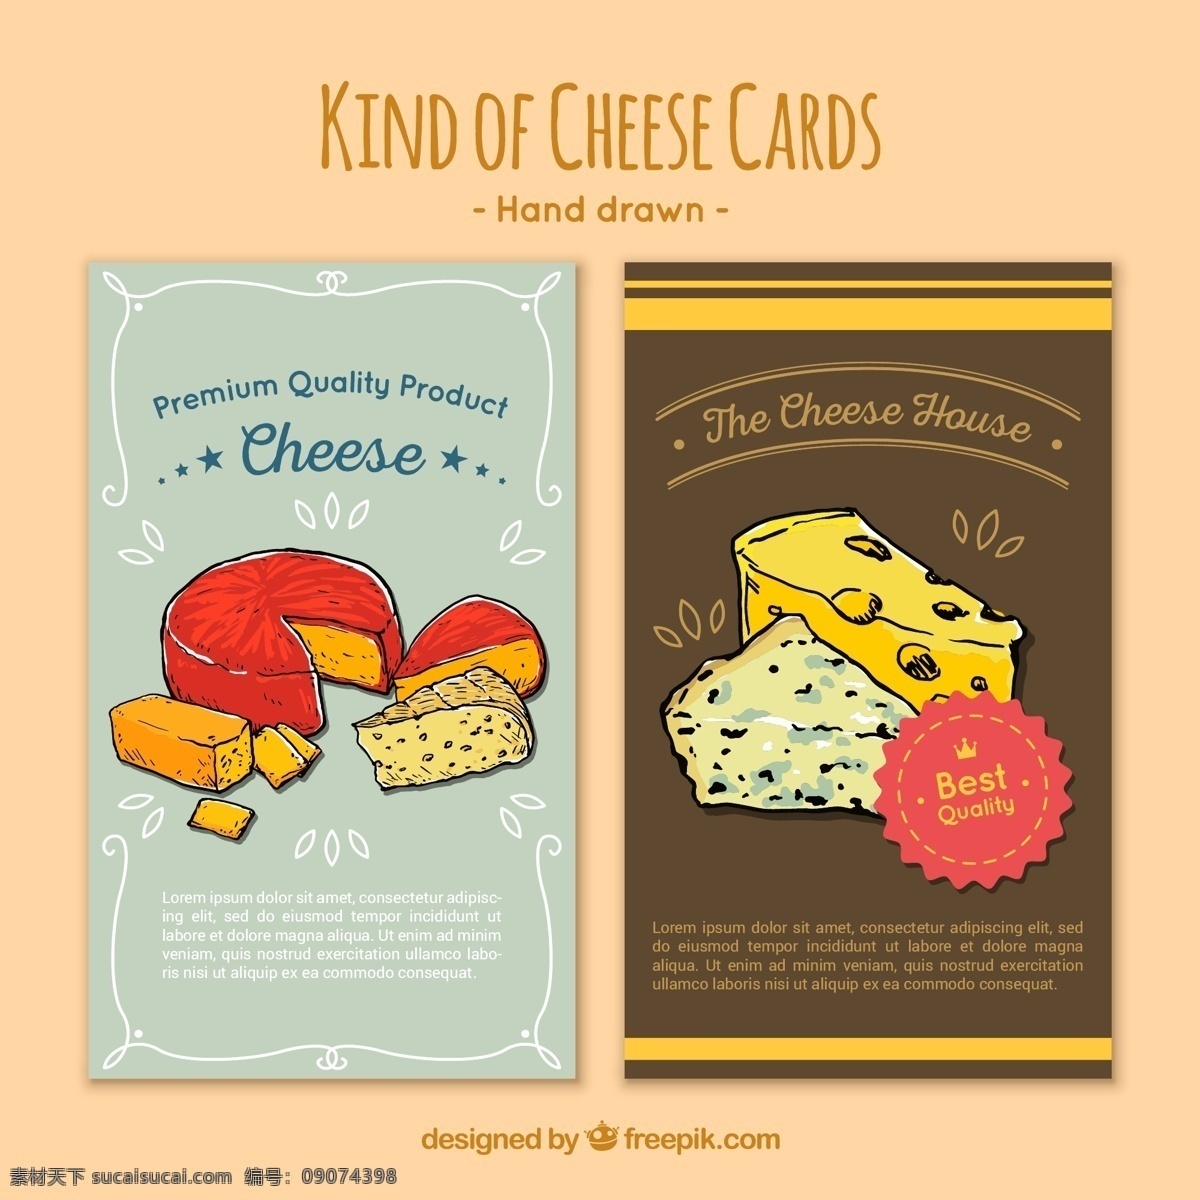 可爱 卡片 奶酪 插图 可爱卡片 奶酪插图卡片 奶酪卡片 食物卡片 矢量卡片 卡通卡片 黄色